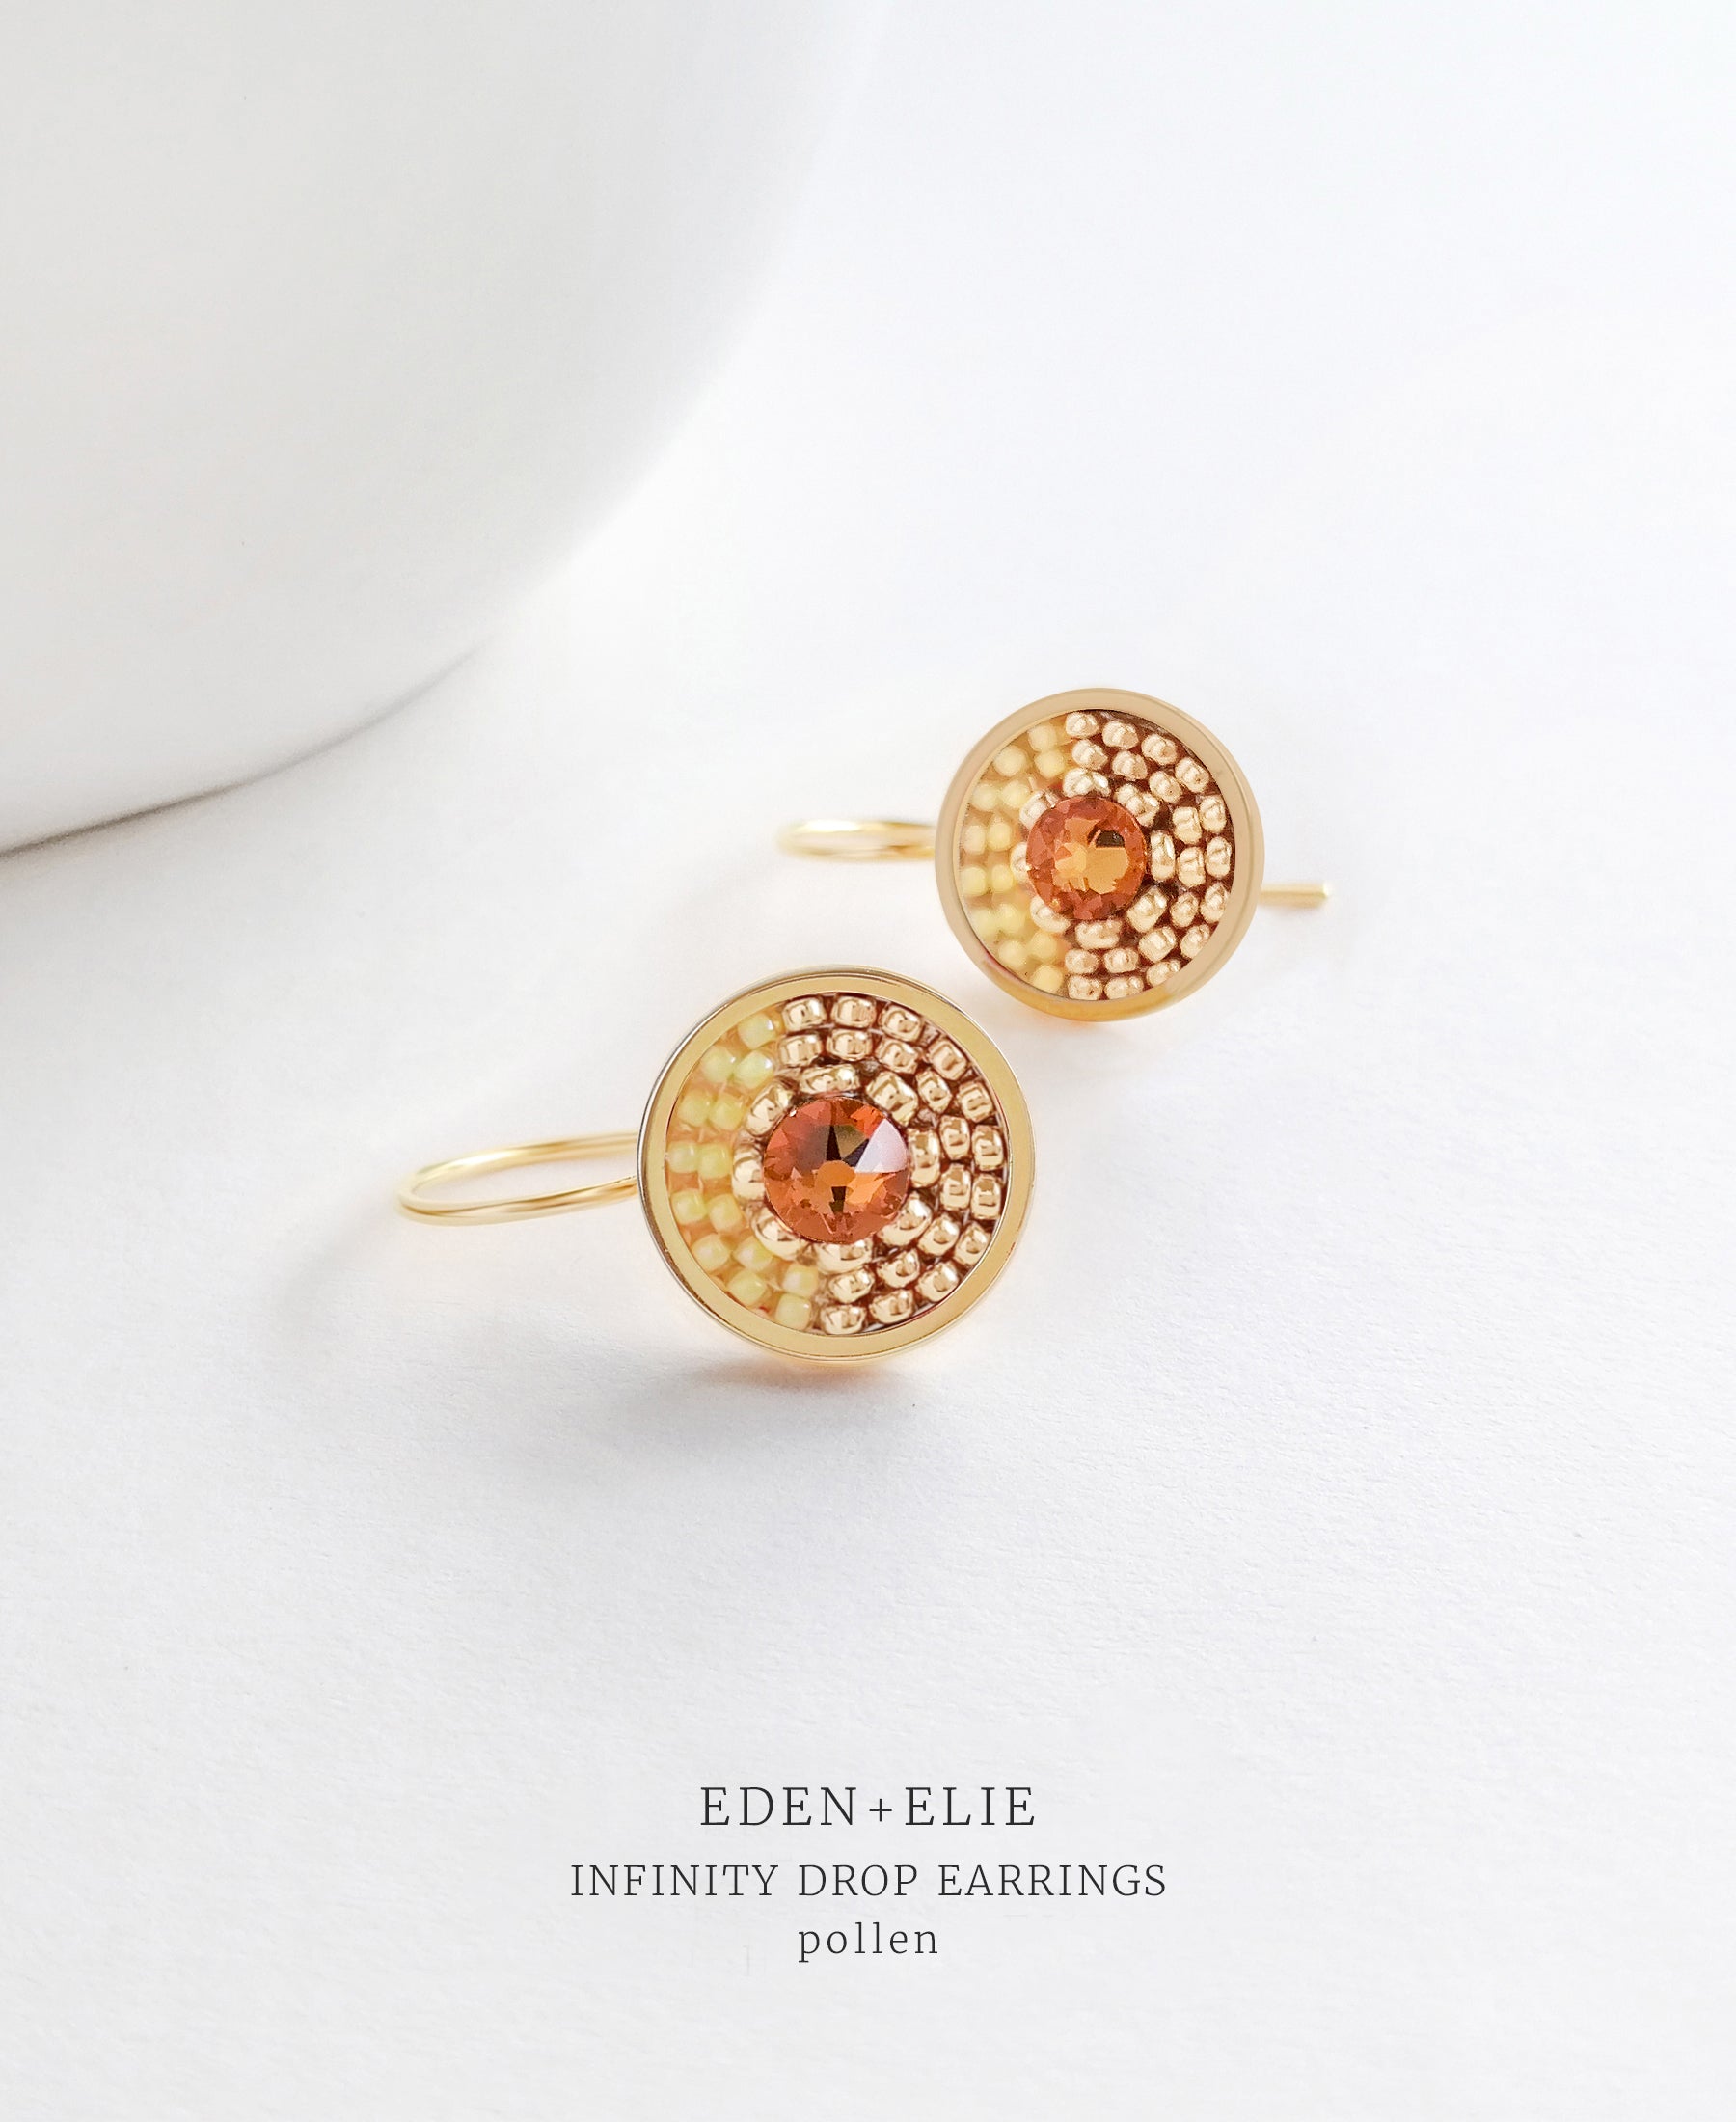 EDEN + ELIE Infinity drop earrings - pollen